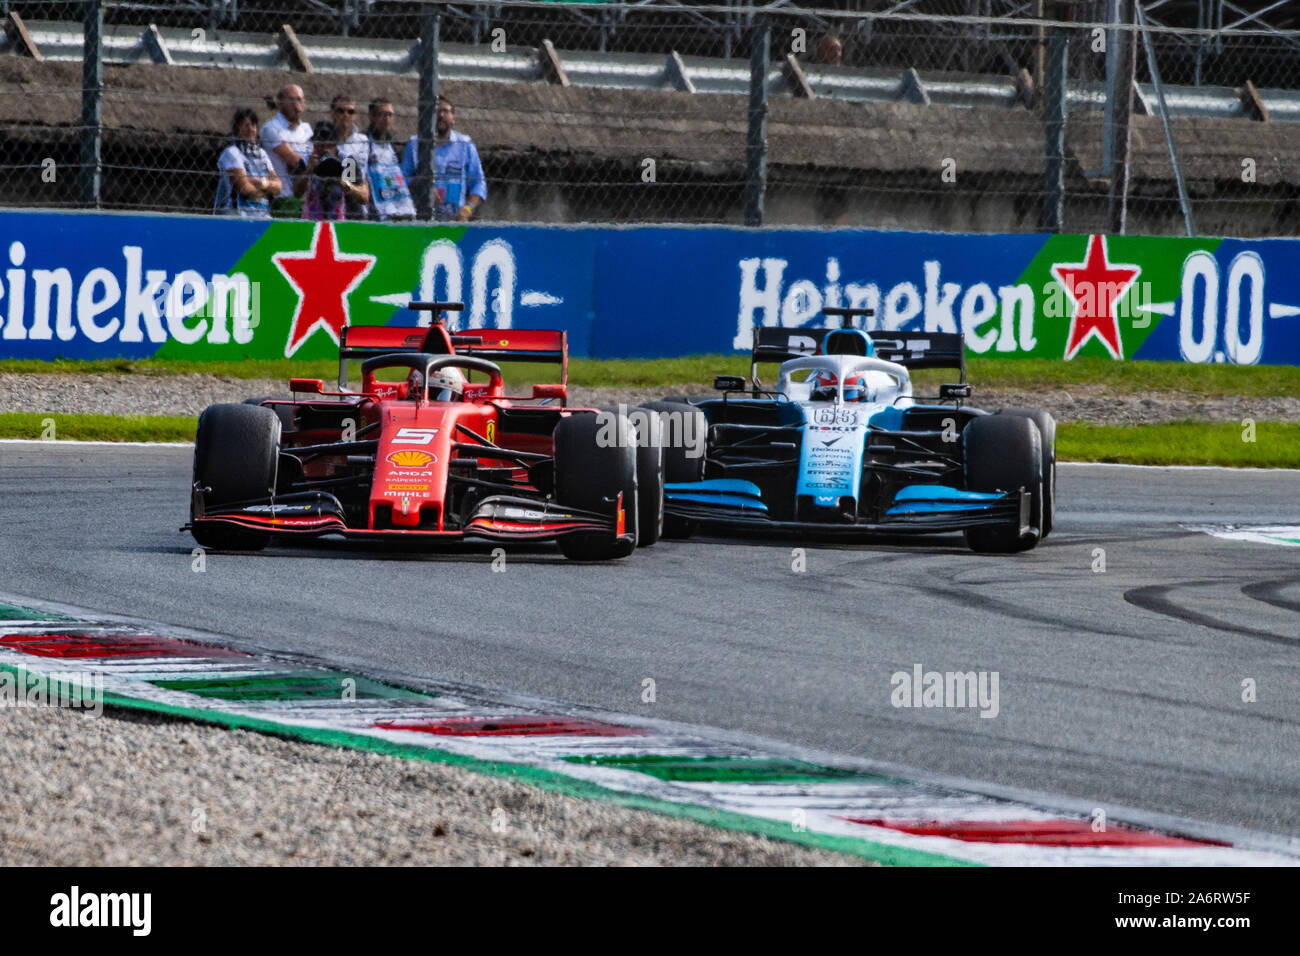 Italia/Monza - 08/09/2019 - #5 Sebastian Vettel (GER, del team Scuderia Ferrari, SF90) e #63 George Russell (GBR, Team Williams FW42) durante l'italiano Foto Stock